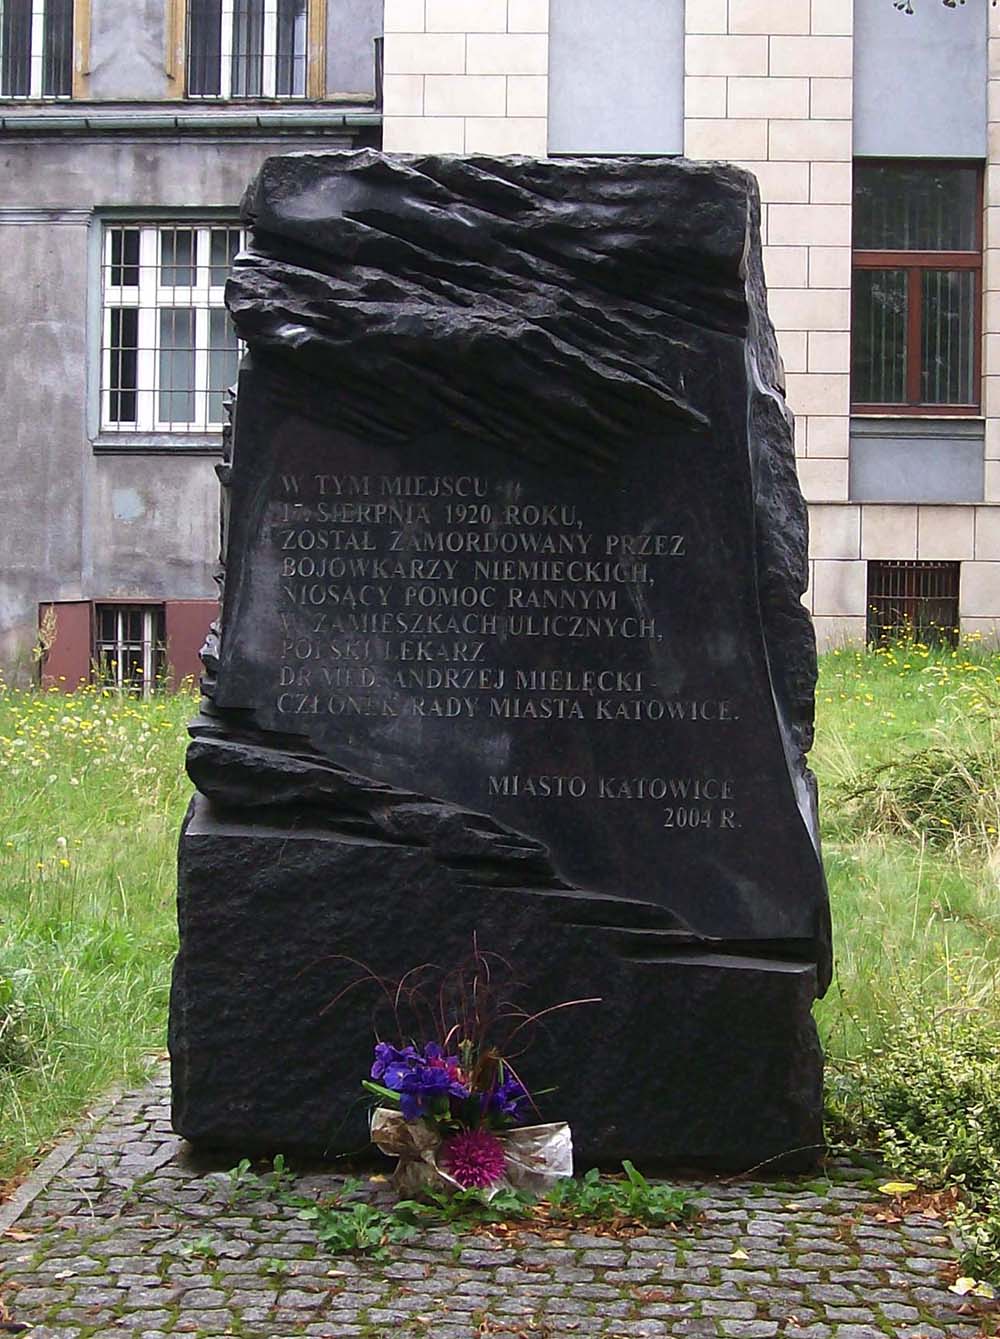 Memorial Murder of Andrzej Mielecki